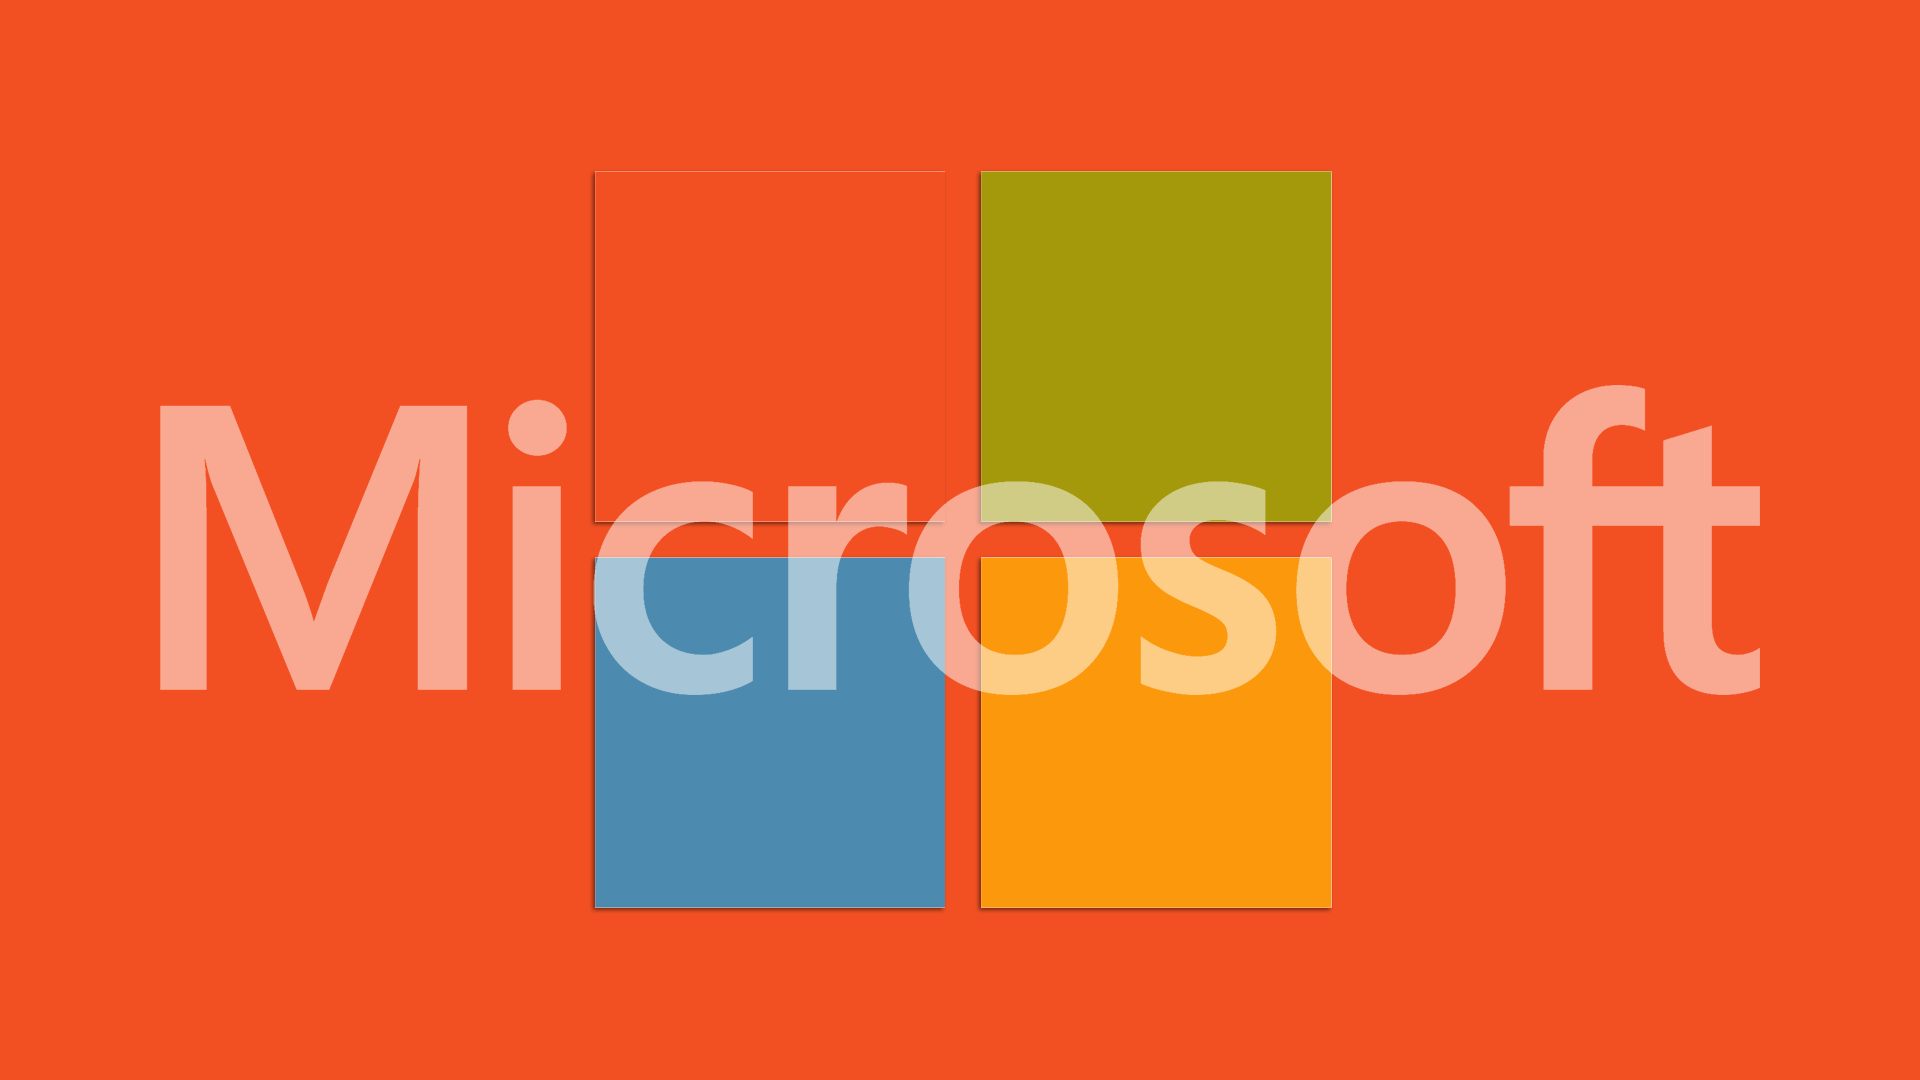 Los ingresos de búsqueda de Microsoft crecieron un 15% el último trimestre, después de rondar el 10% en los 4 trimestres anteriores